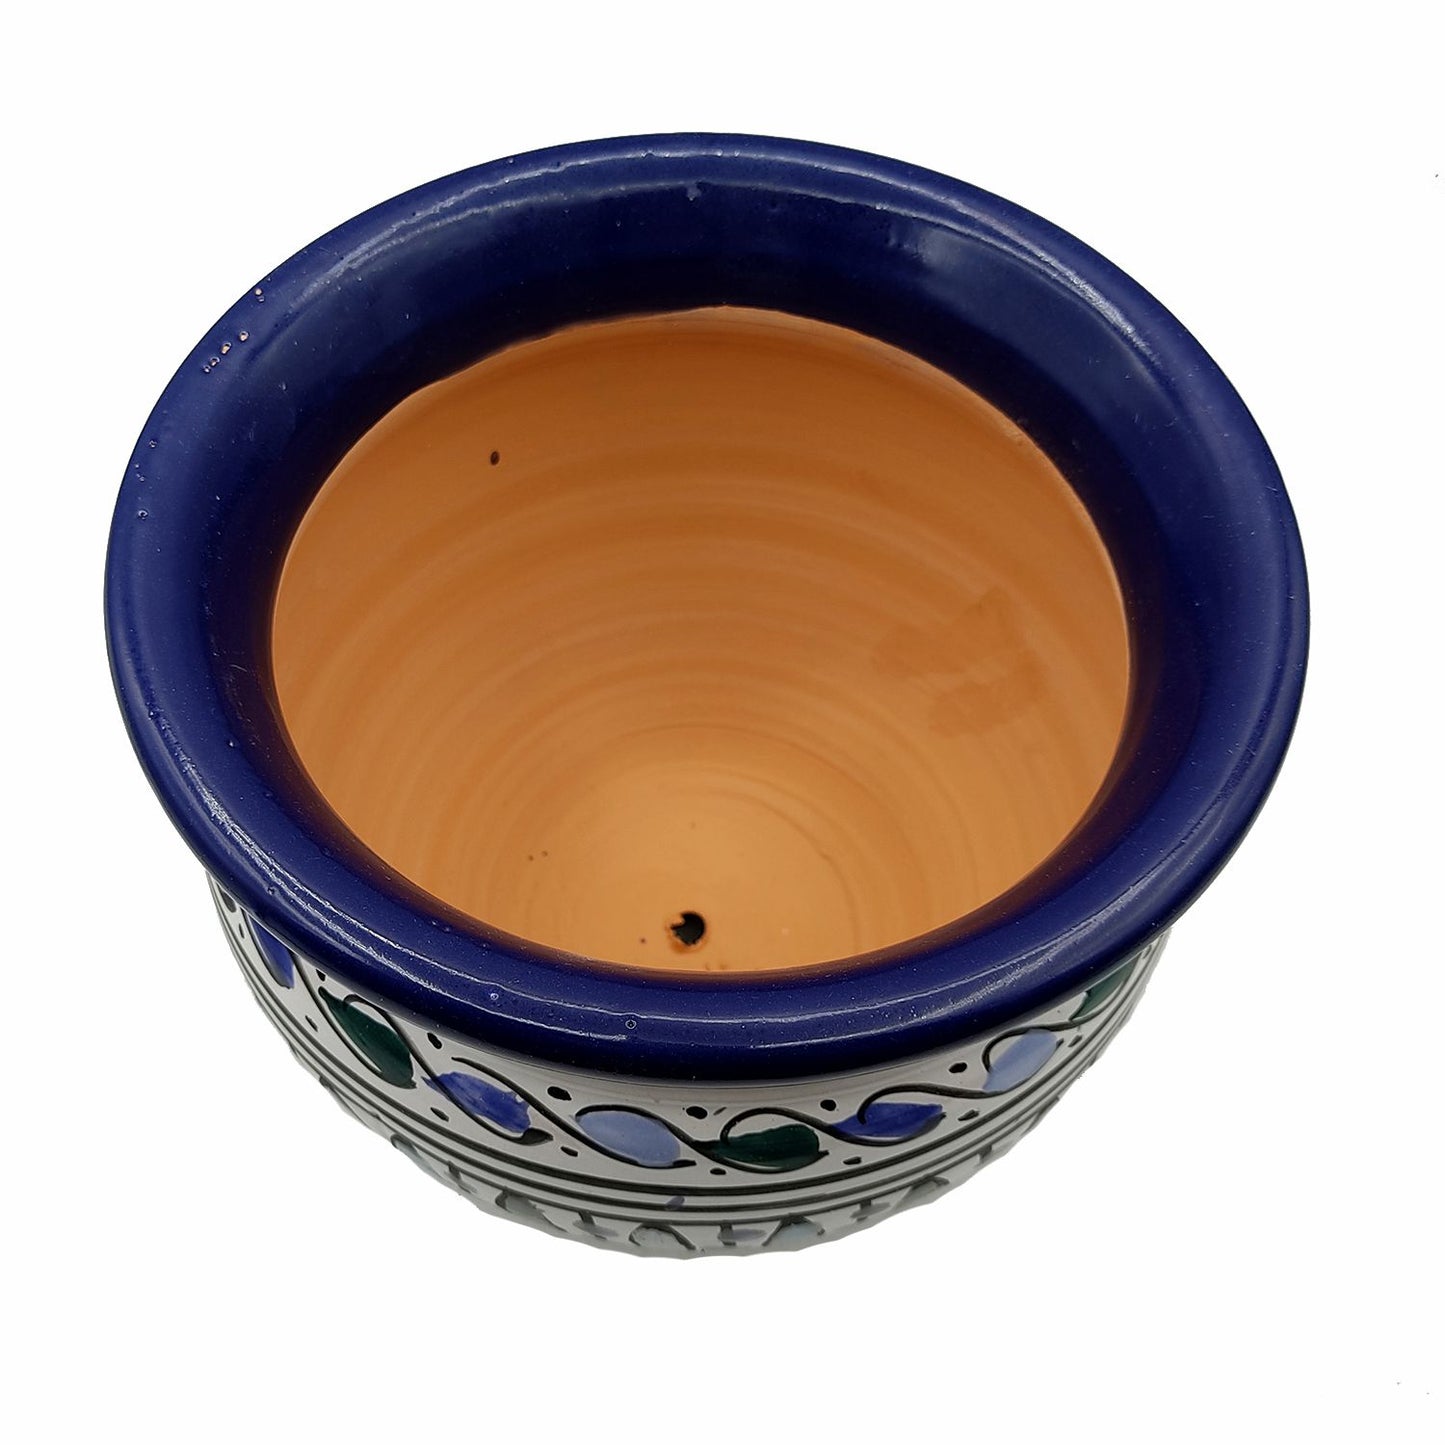 Vaso Cachepot Berbero Etnico Tunisno Marocchino Ceramica Terracotta Orientale 0411221012